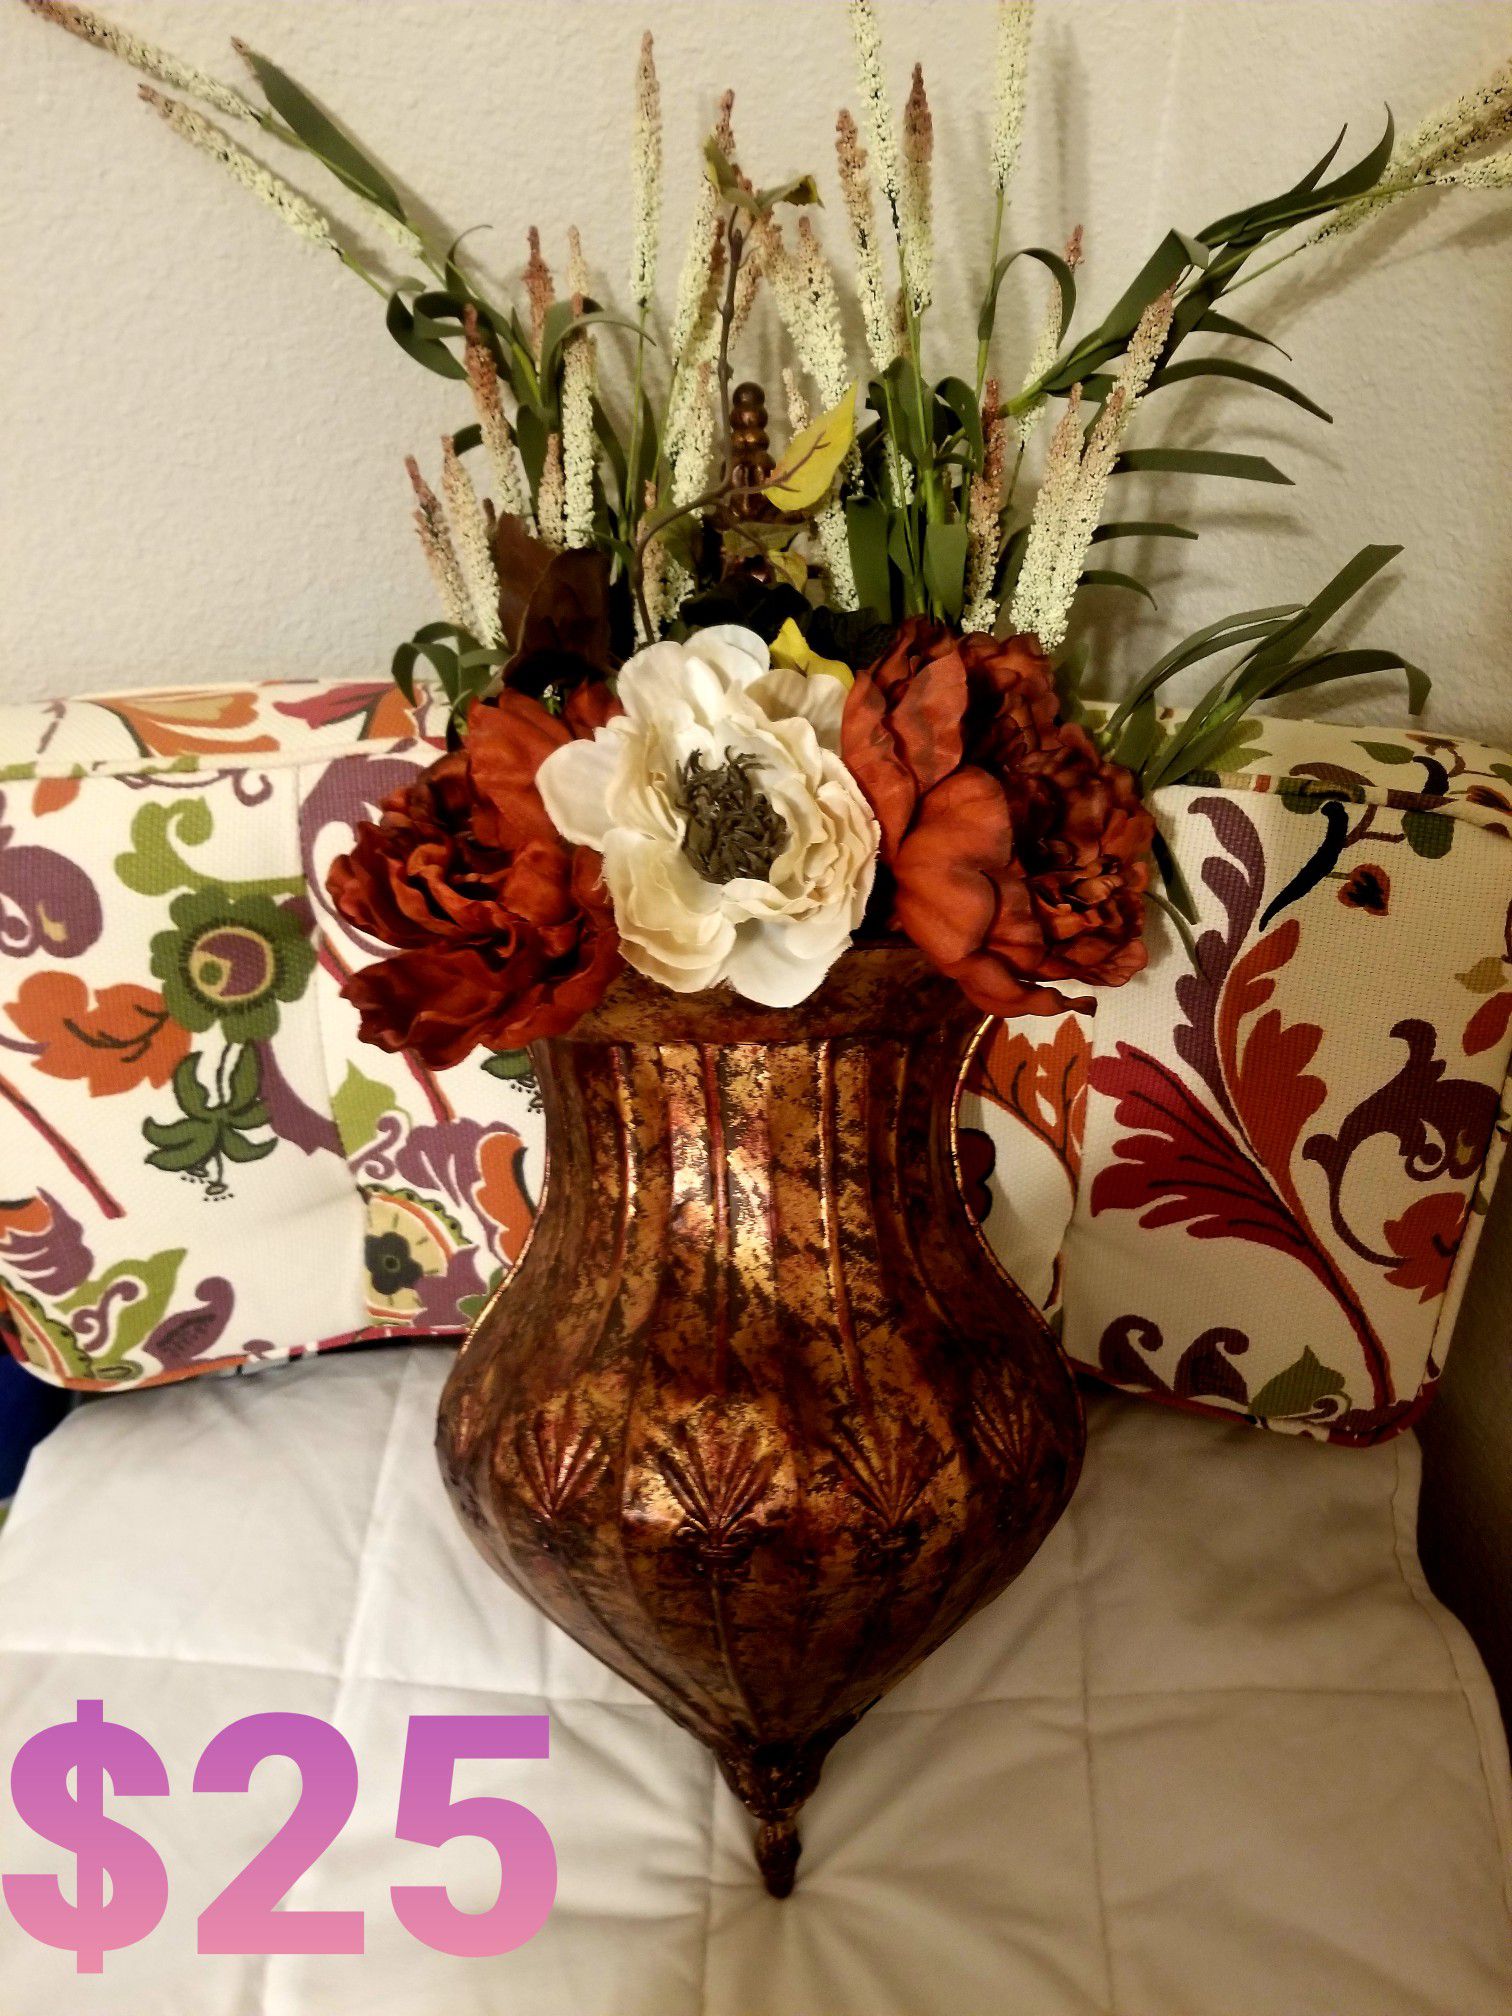 Flower Wall Vase